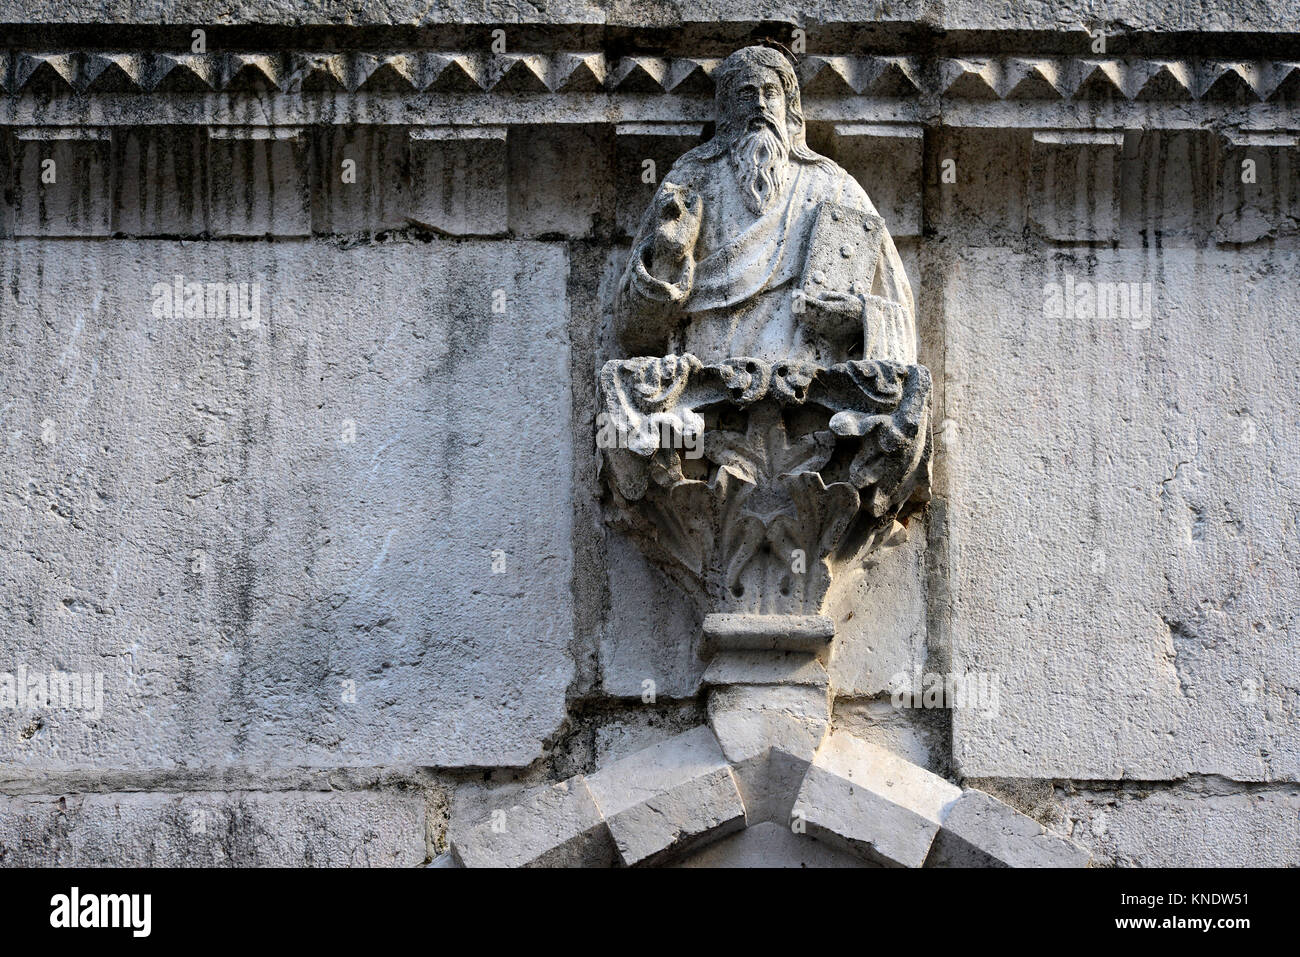 Italia Friuli San Daniele del Friuli, Iglesia de S. Antonio Abate. Vista de la fachada de piedra de Istria de estilo gótico veneciano. Estatua encima del pórtico representando la bendición de Dios Padre Foto de stock